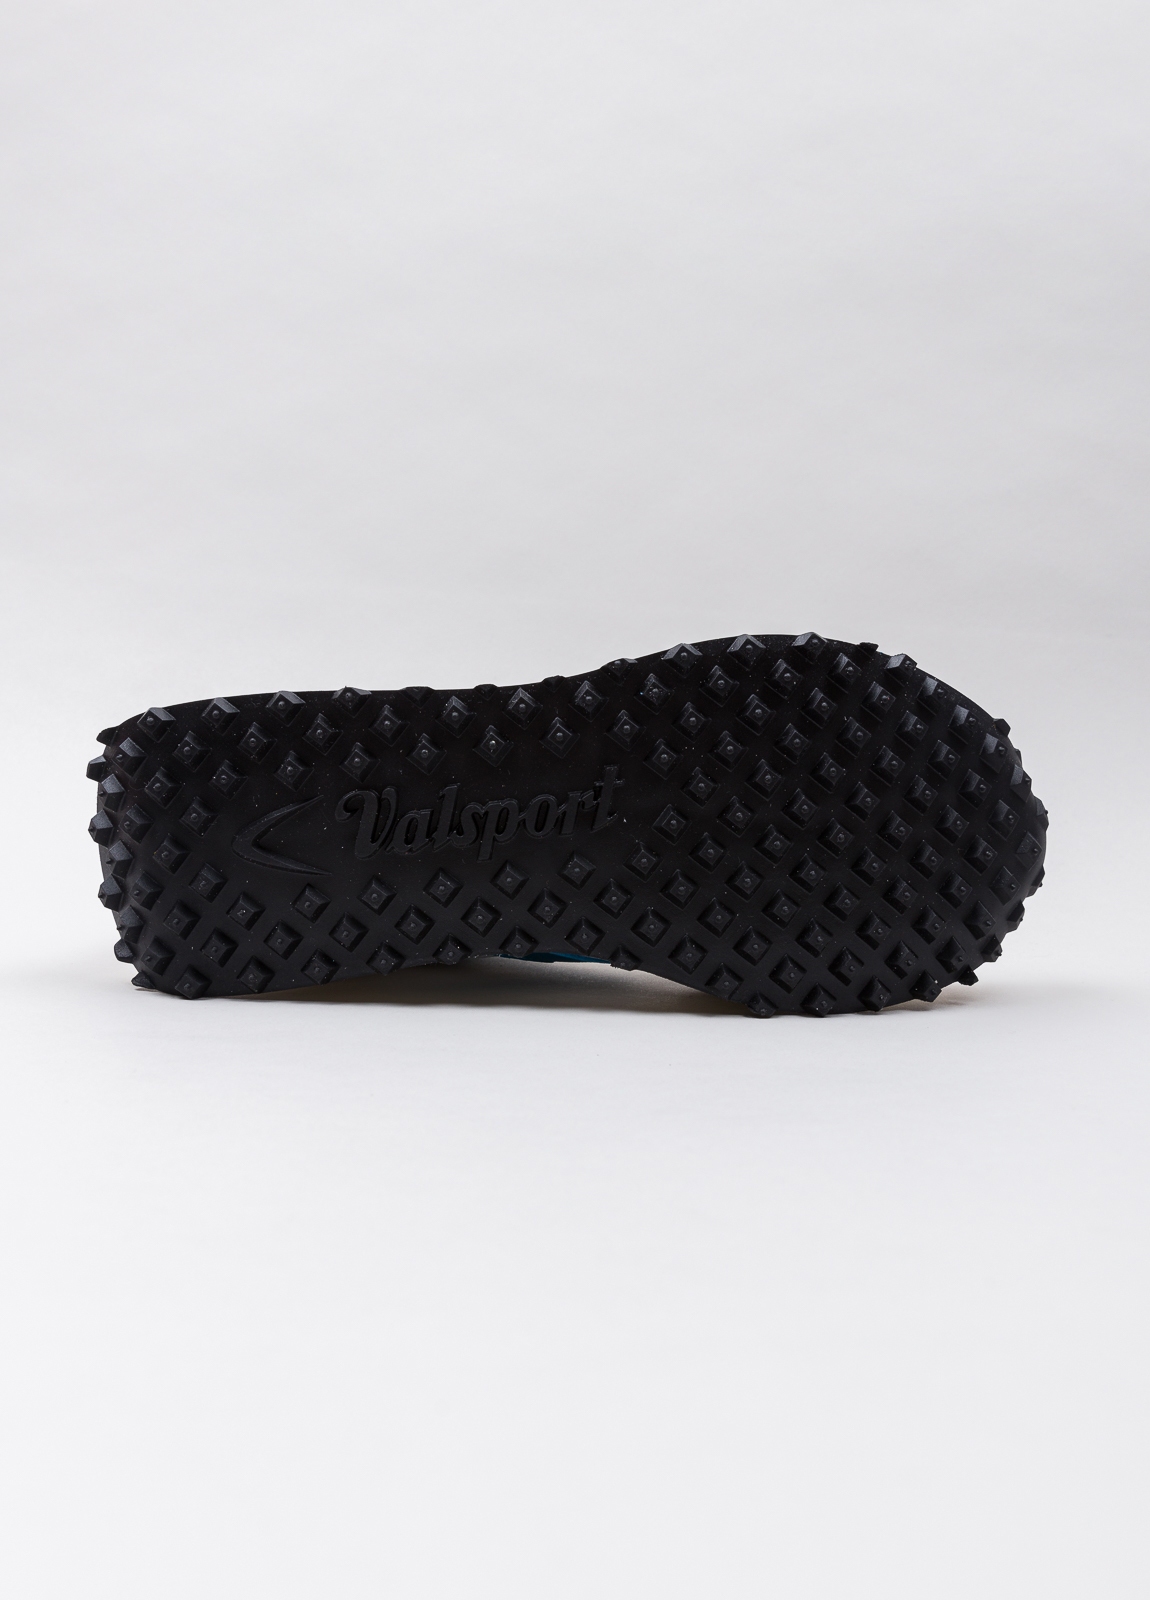 Sneakers VALSPORT blanca y beige con detalles azul y negro - Ítem6